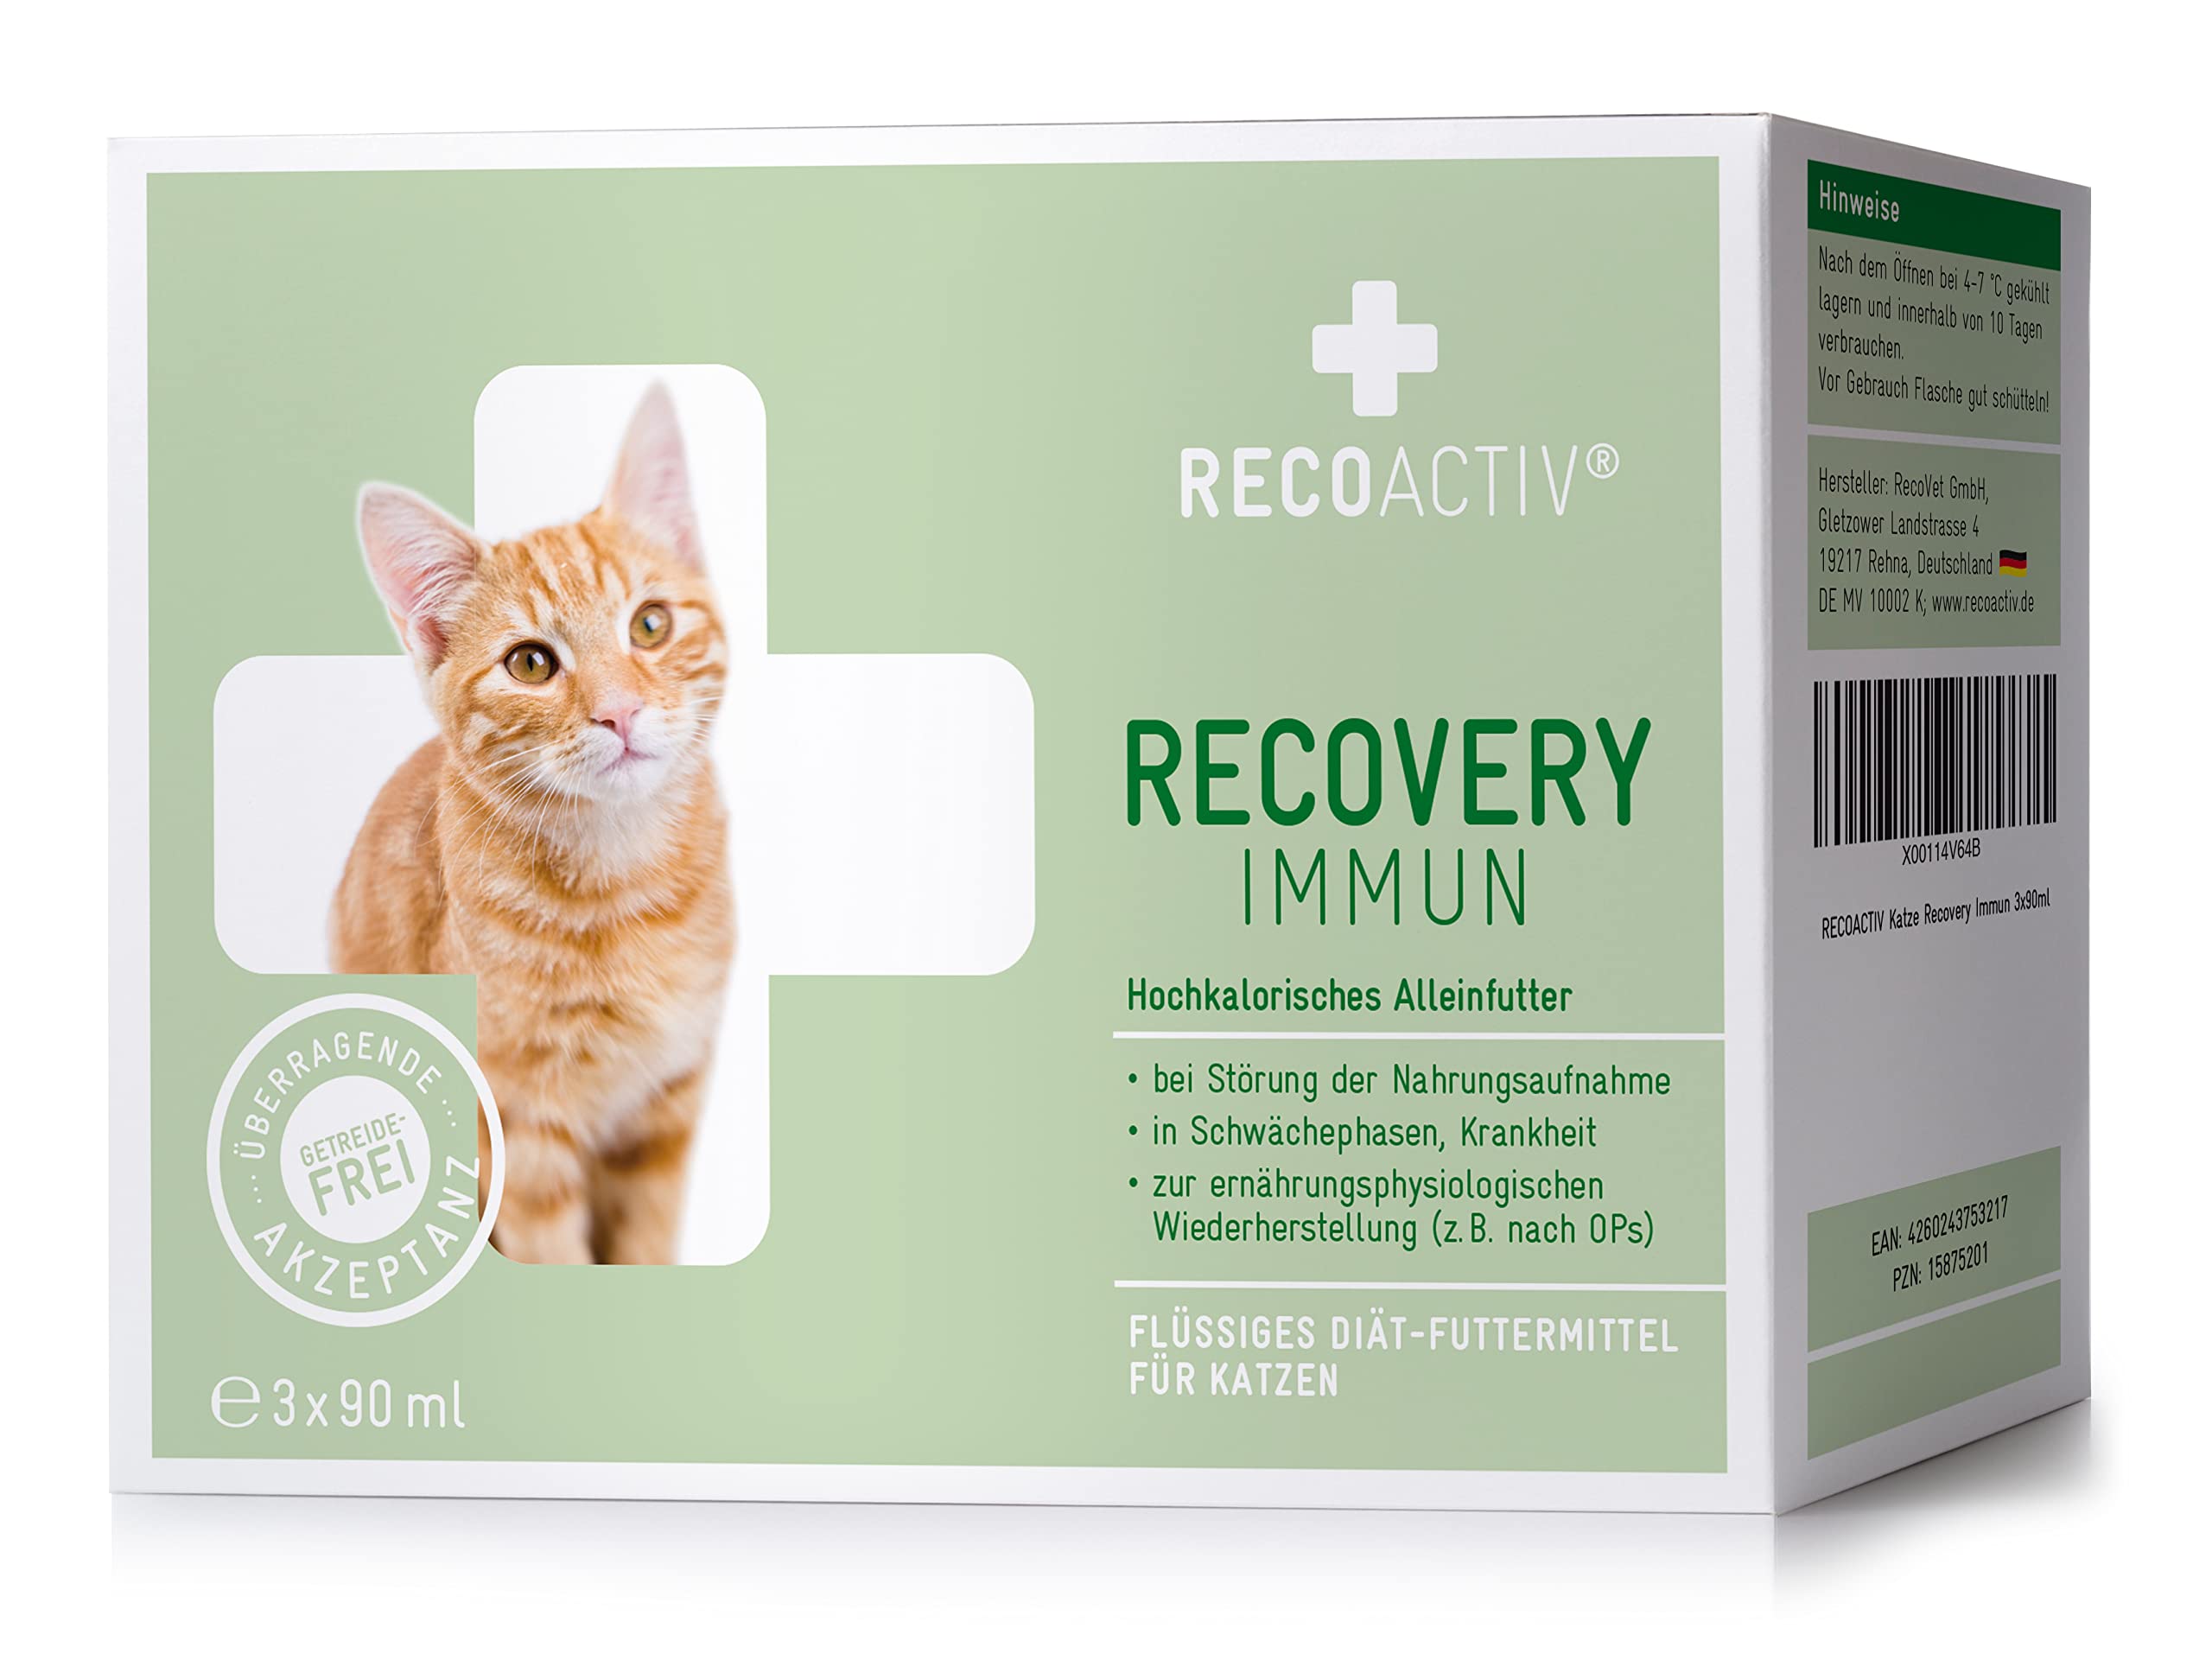 RECOACTIV Recovery Immun für Katzen, 3 x 90 ml, hochkalorisches Diät-Alleinfuttermittel bei Mangelernährung und in der Rekonvaleszenz, zur Gewichtszunahme sowie bei Nahrungsverweigerung